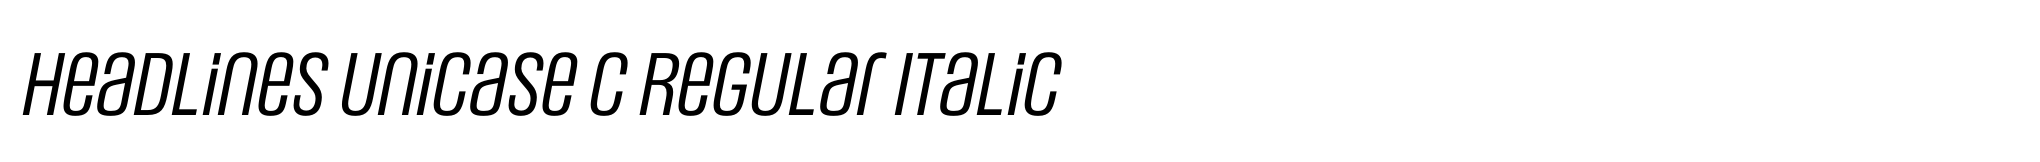 Headlines Unicase C Regular Italic image